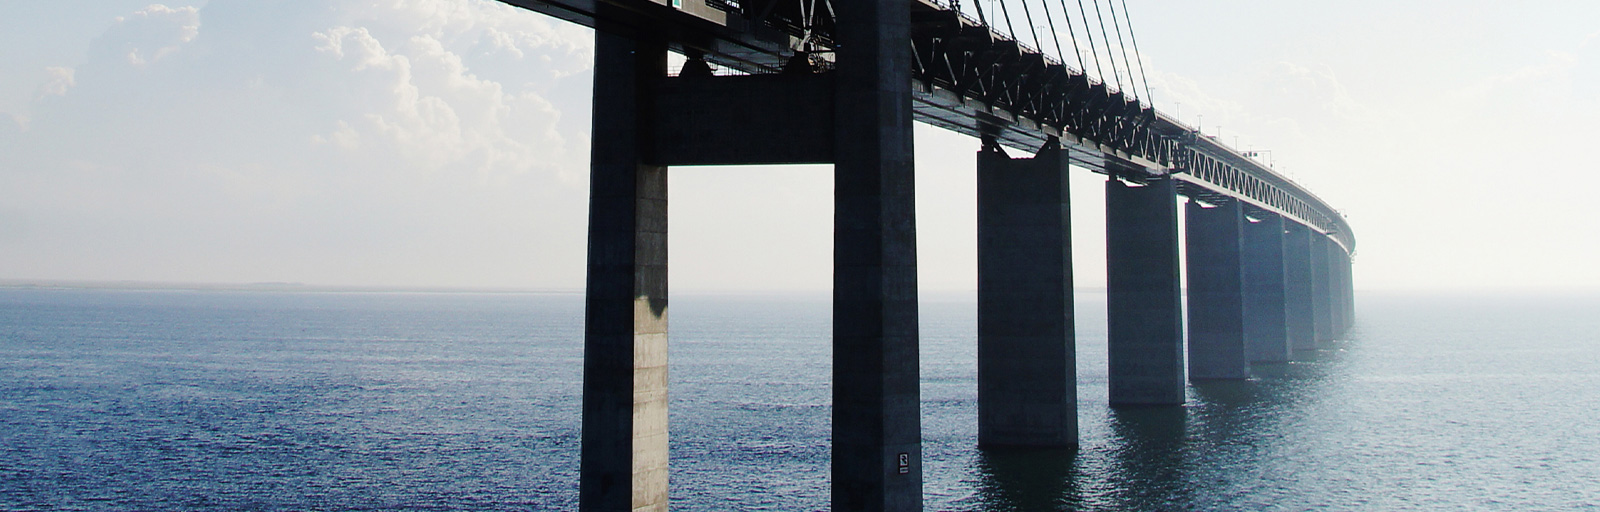 Sedan öppningen av Öresundsbron 2000 har den varit vägen till jobbet för både svenskar och danskar.